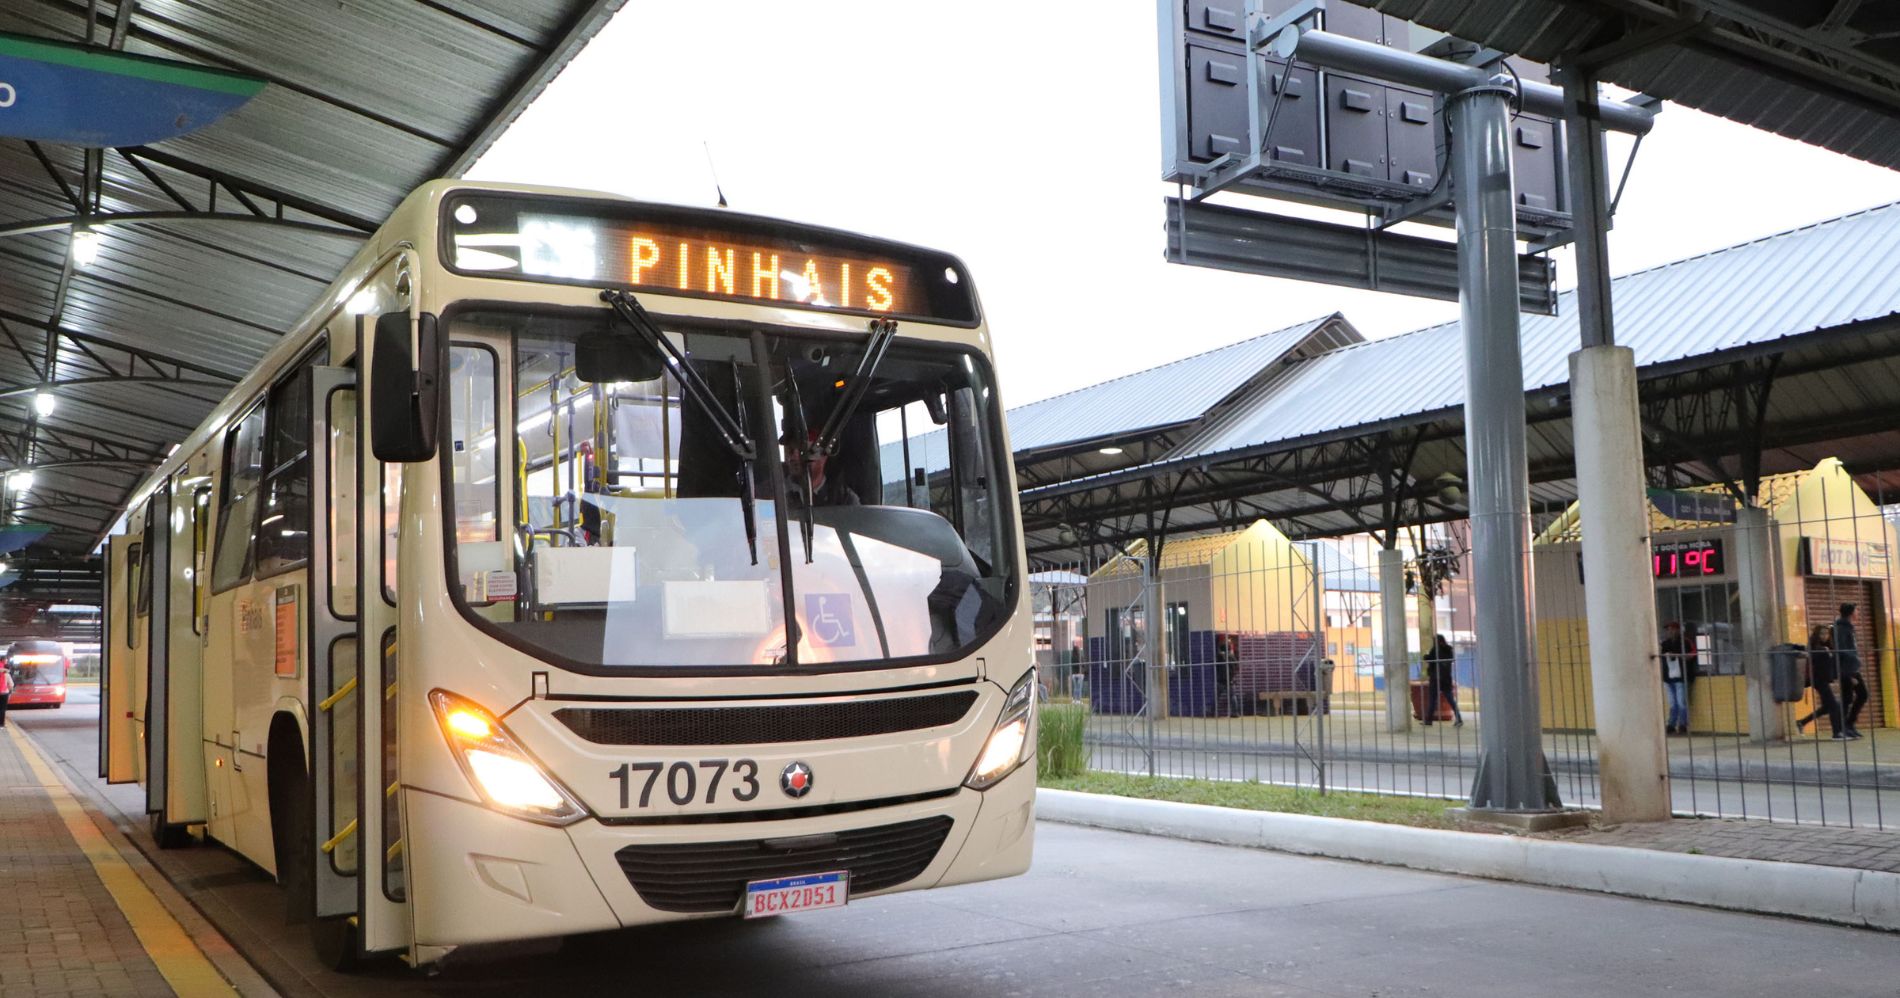 Amep aumenta em 184% o número de viagens nas linhas de ônibus em Pinhais